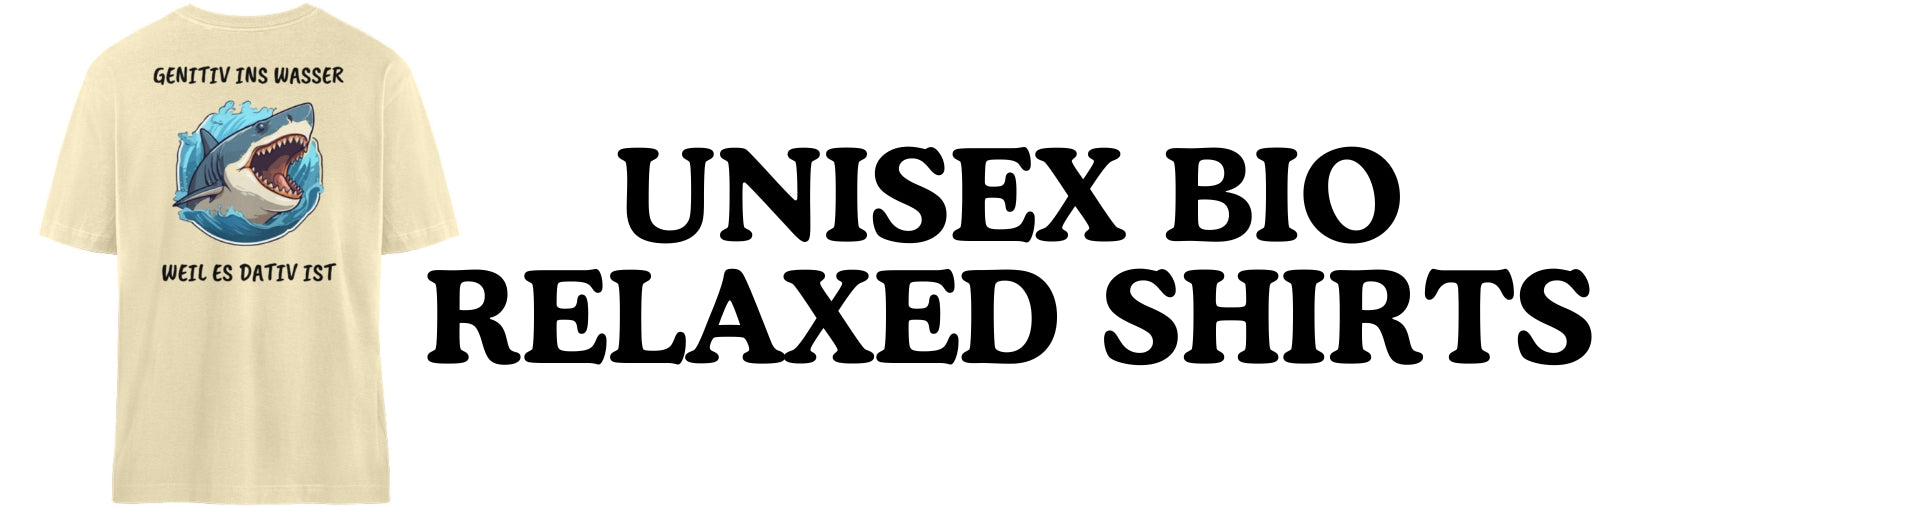 Unisex Bio Relaxed Shirts